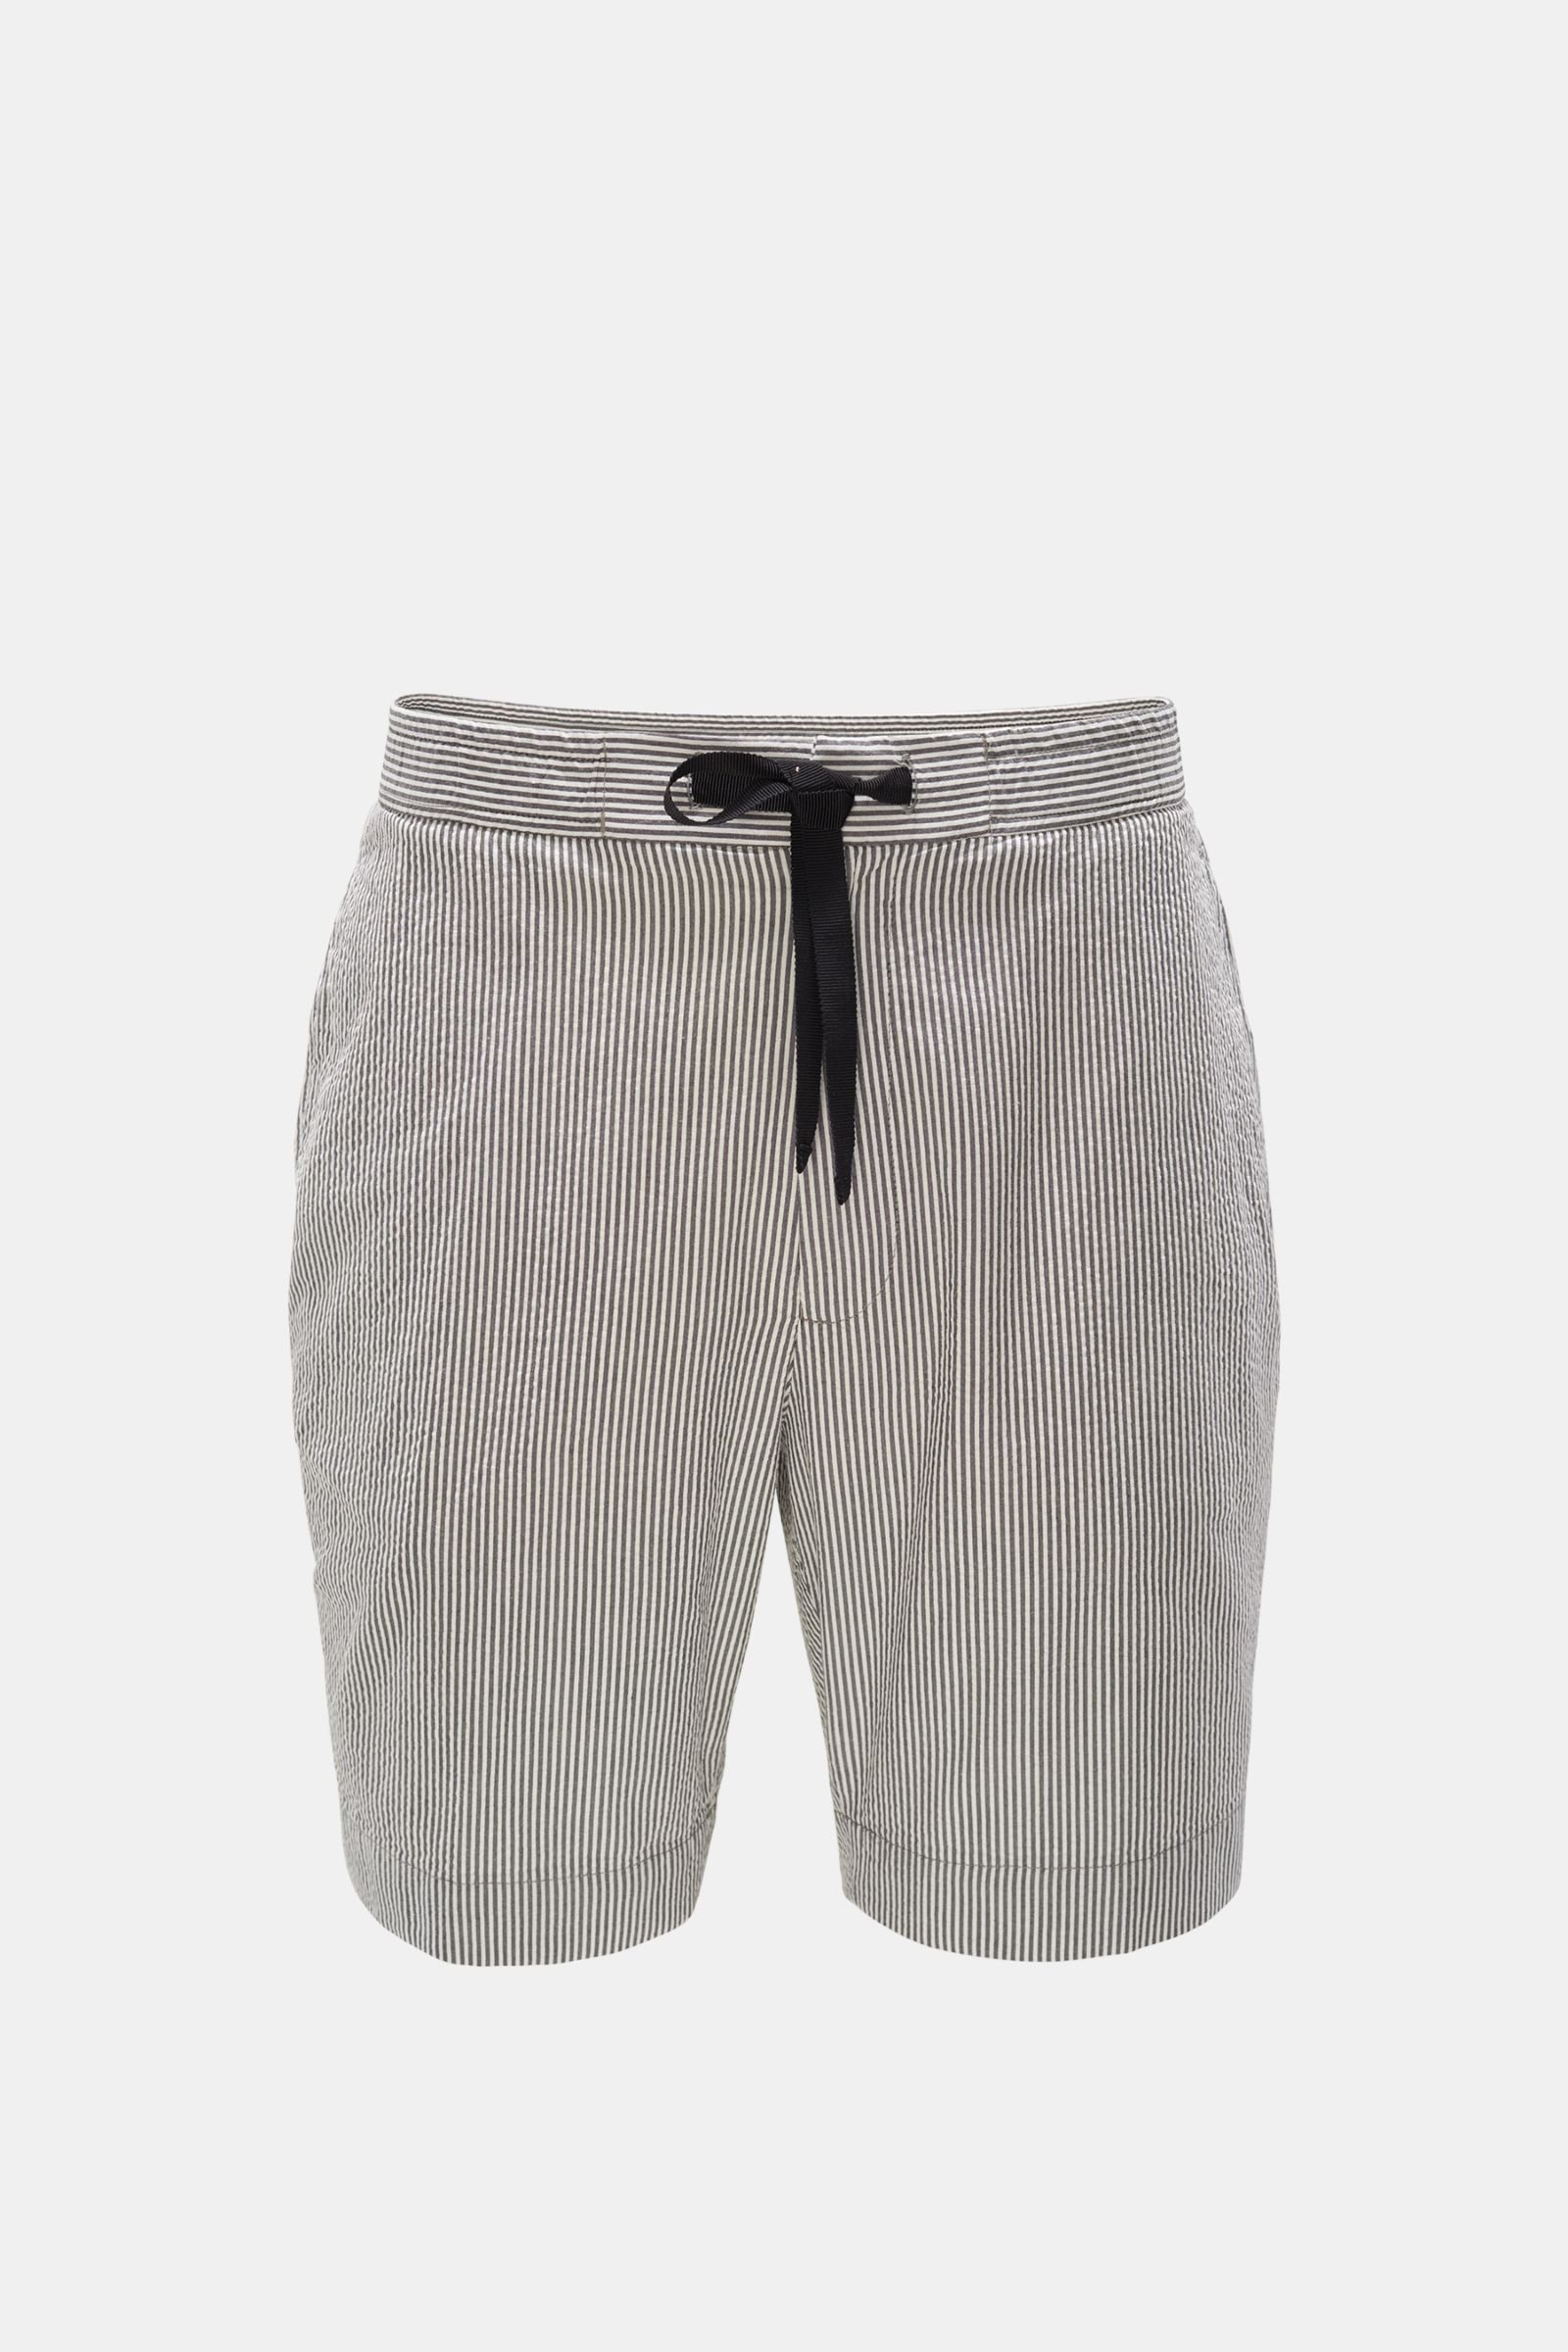 Seersucker shorts 'Phil' anthracite/white striped